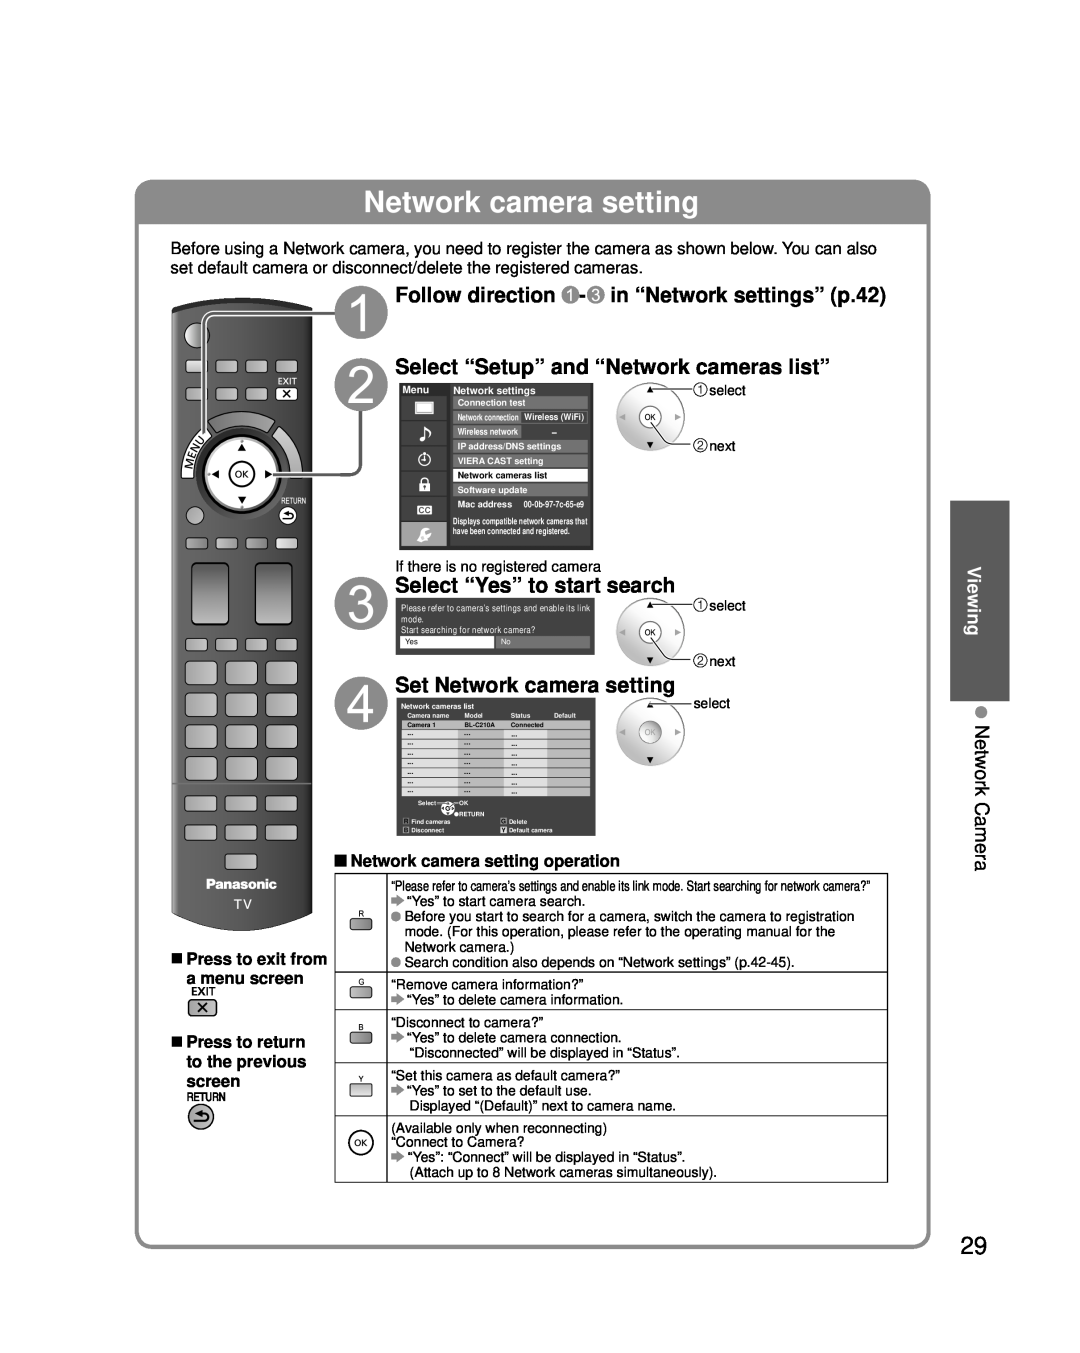 Panasonic TC-P46G25 Network Camera, Viewing, Network camera setting operation, Wireless WiFi, Wireless network, Model 